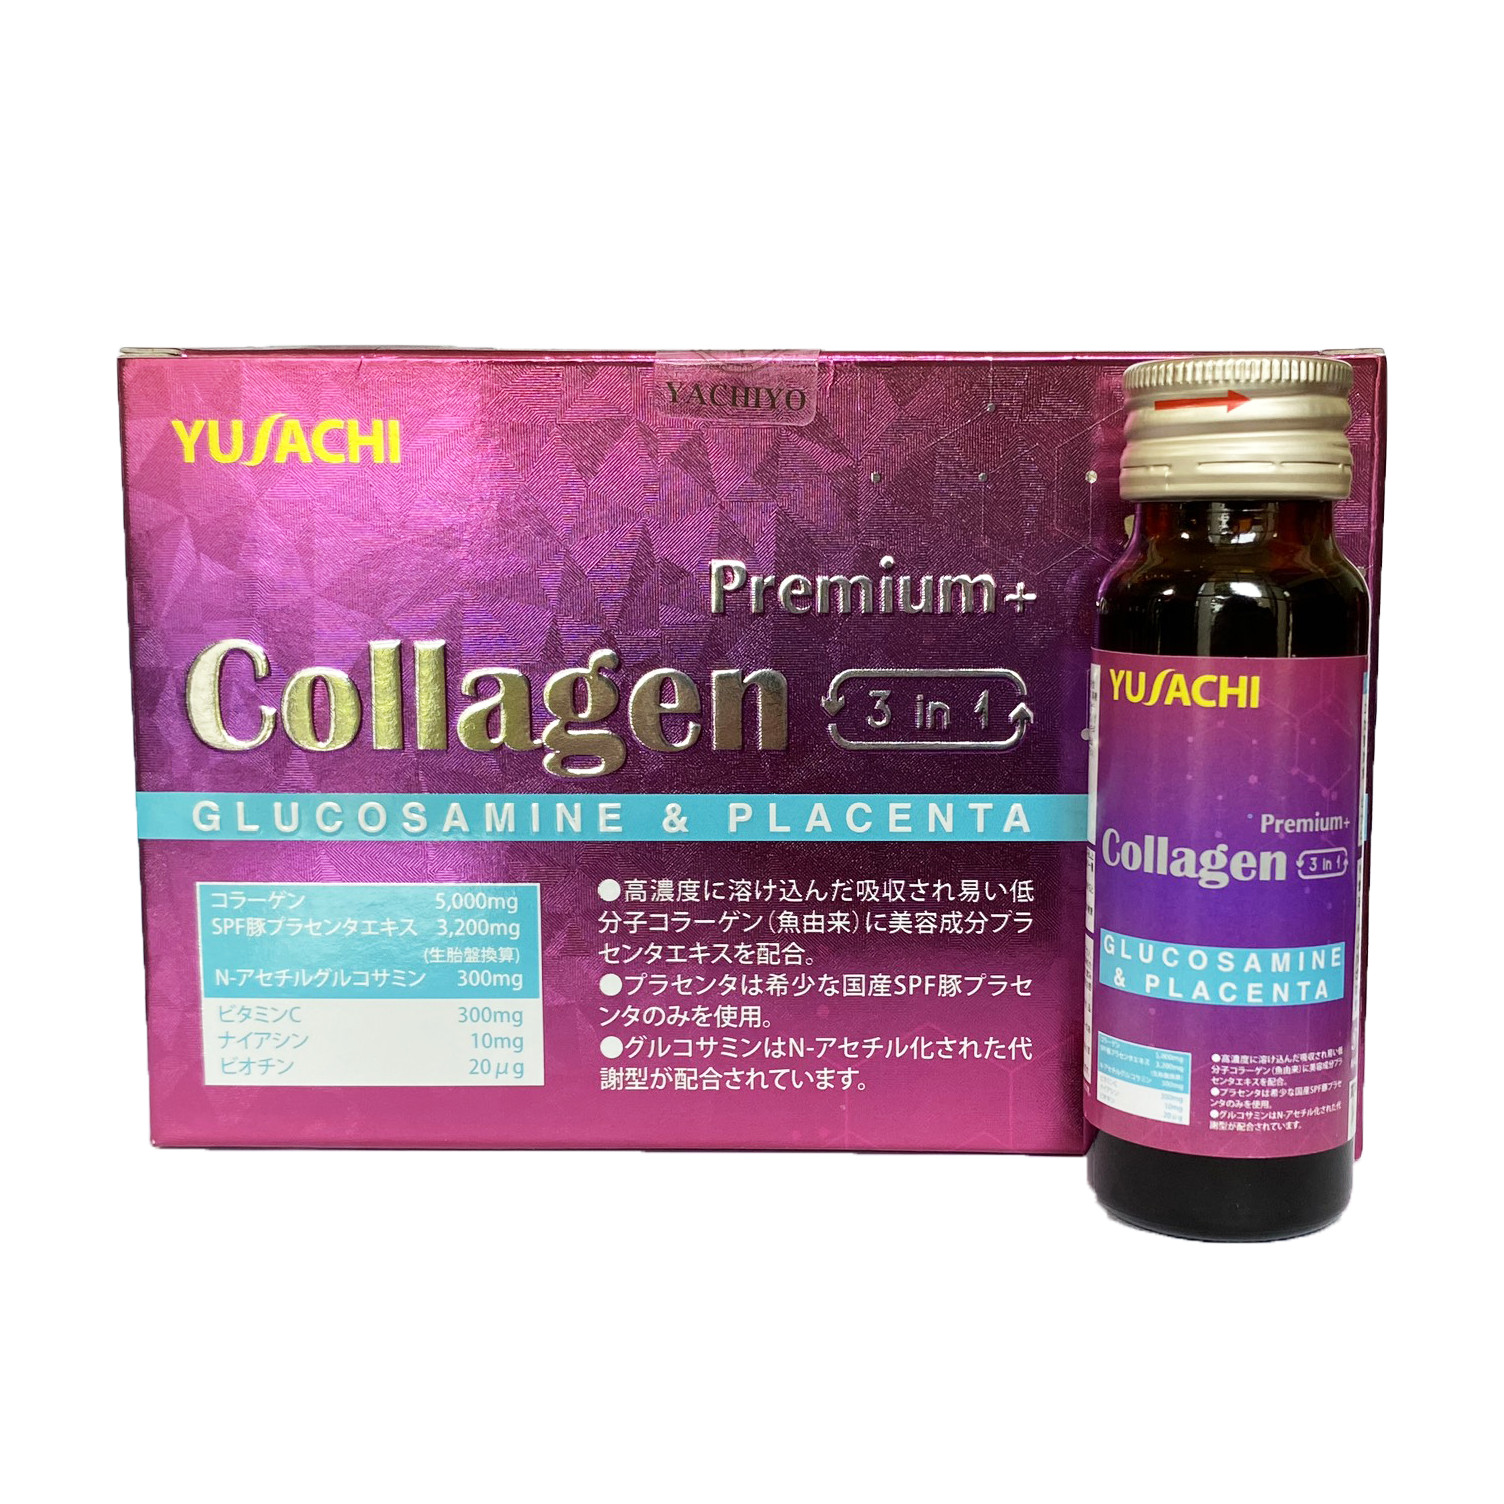 Collagen Premium 3in1